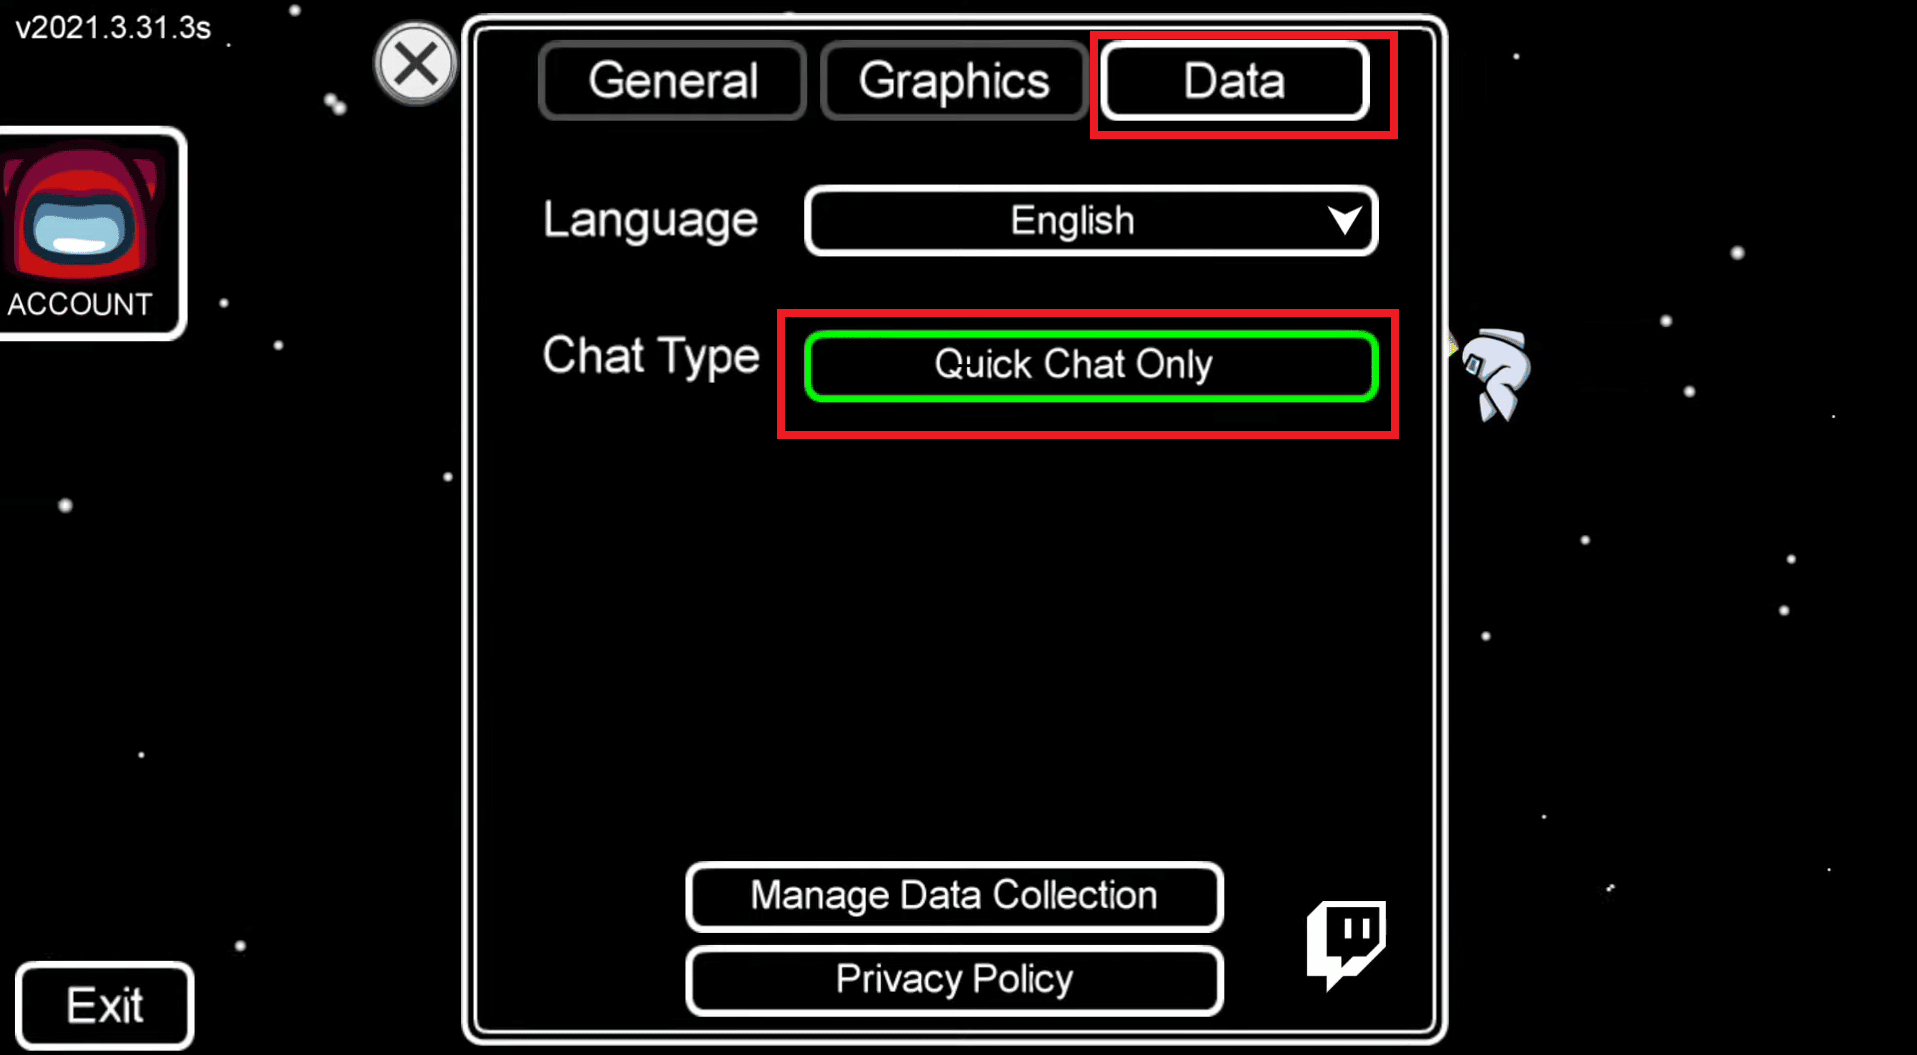 เลือกตัวเลือก Quick Chat Only เพื่อเปิดใช้งาน Quick Chat ในหมู่พวกเรา